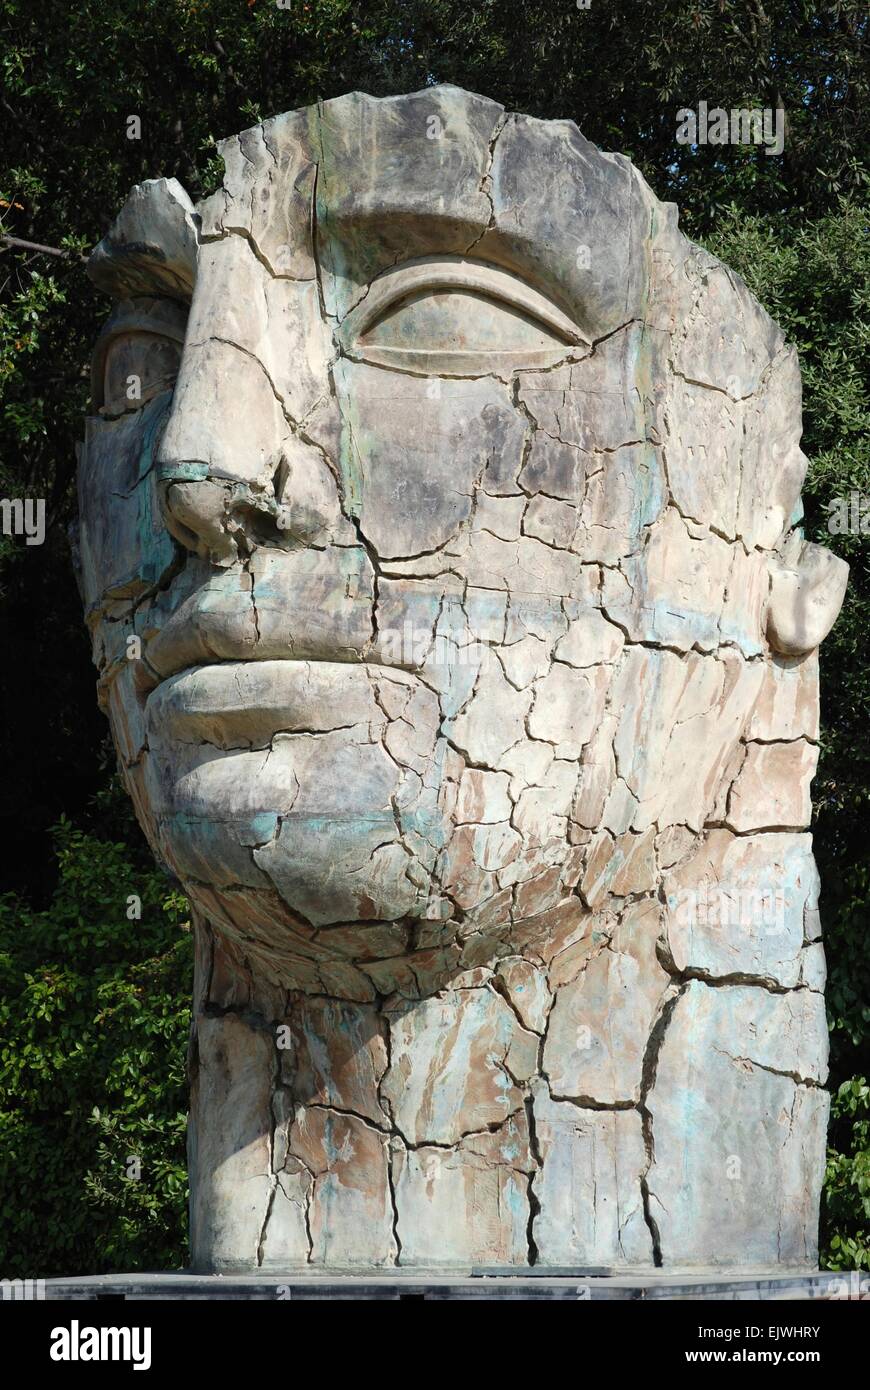 Tête géante et sculpture de visage dans le parc de sculptures de Boboli Gardens, Florence, Italie. Banque D'Images